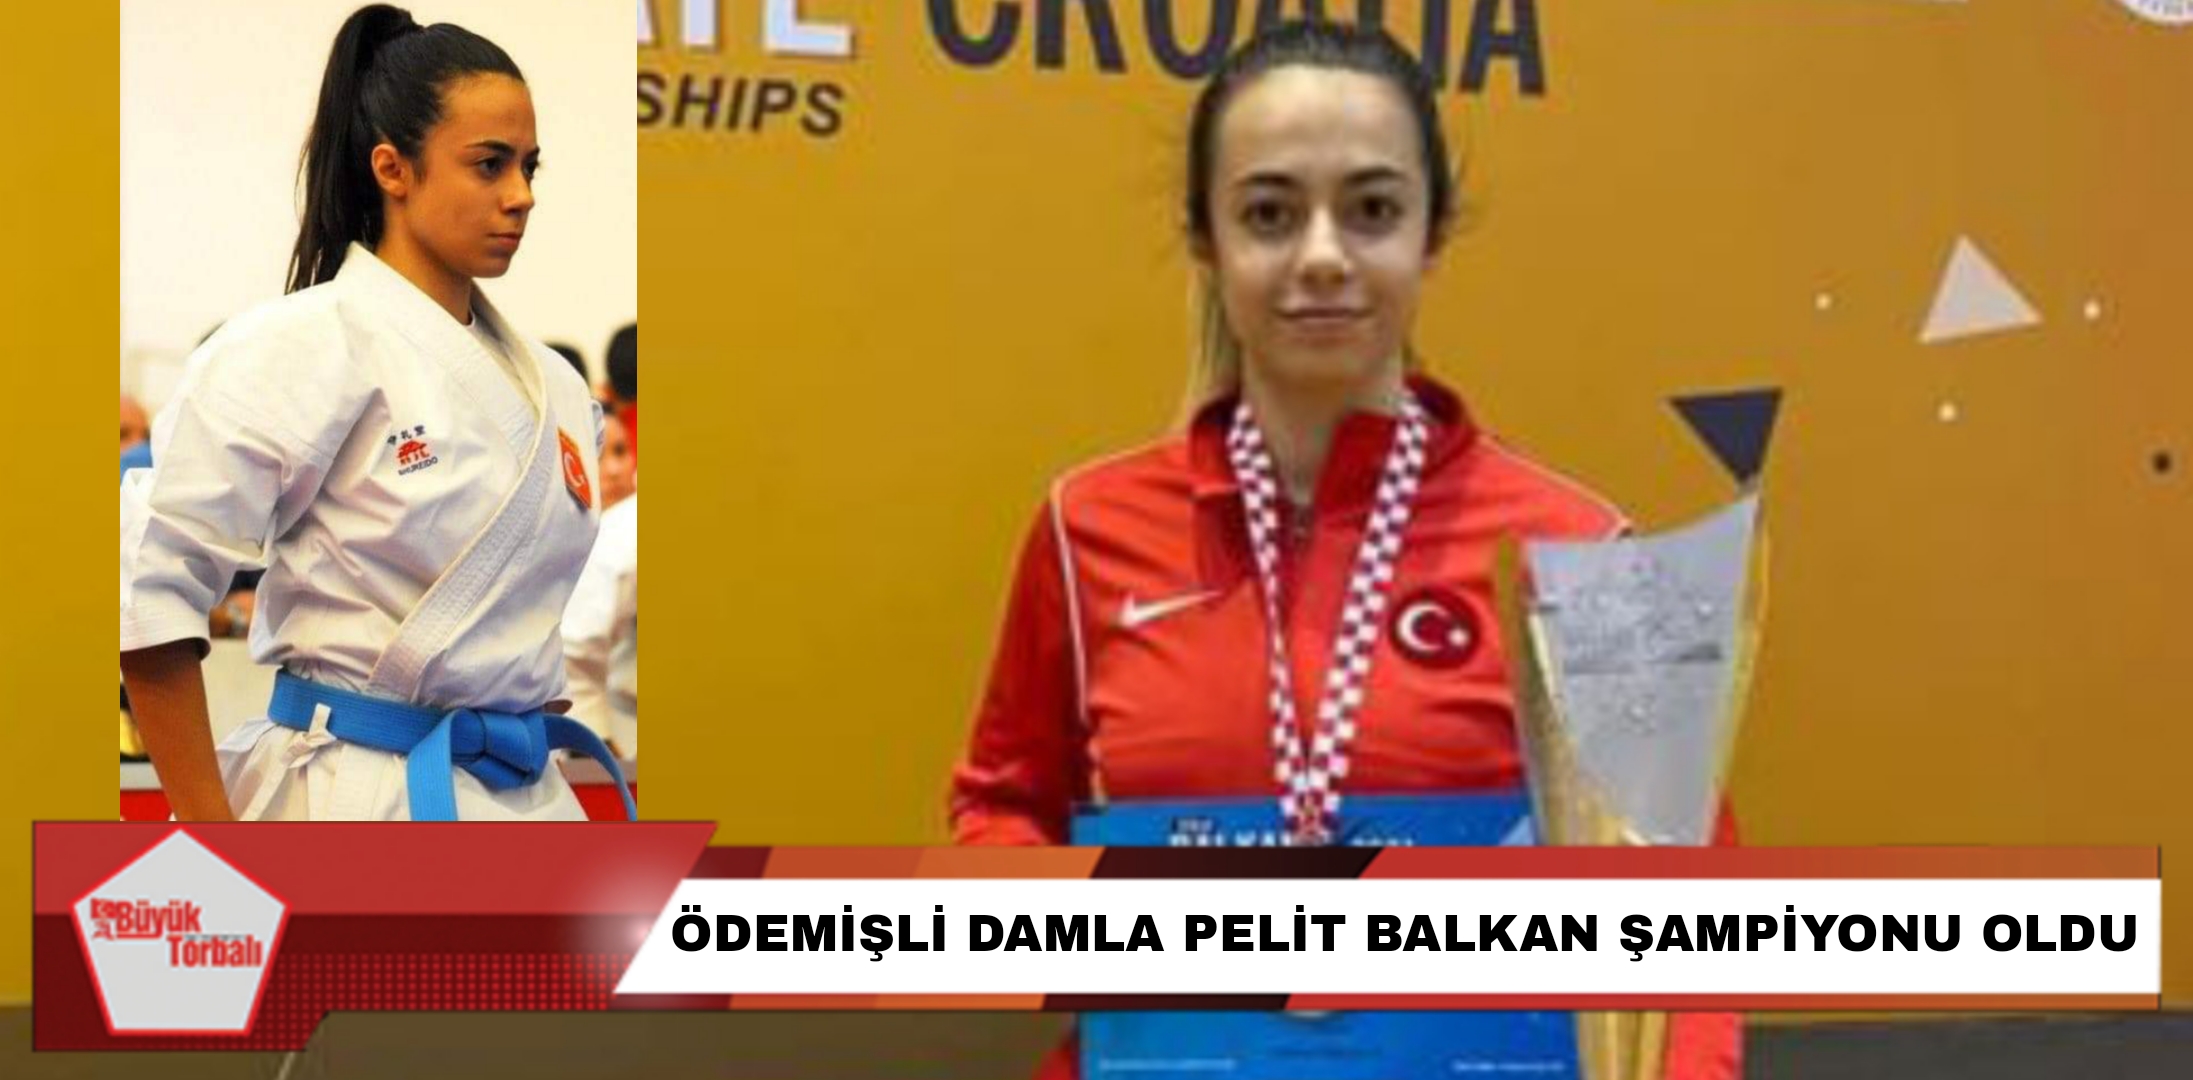 Ödemişli Damla Pelit, Balkan Şampiyonu oldu